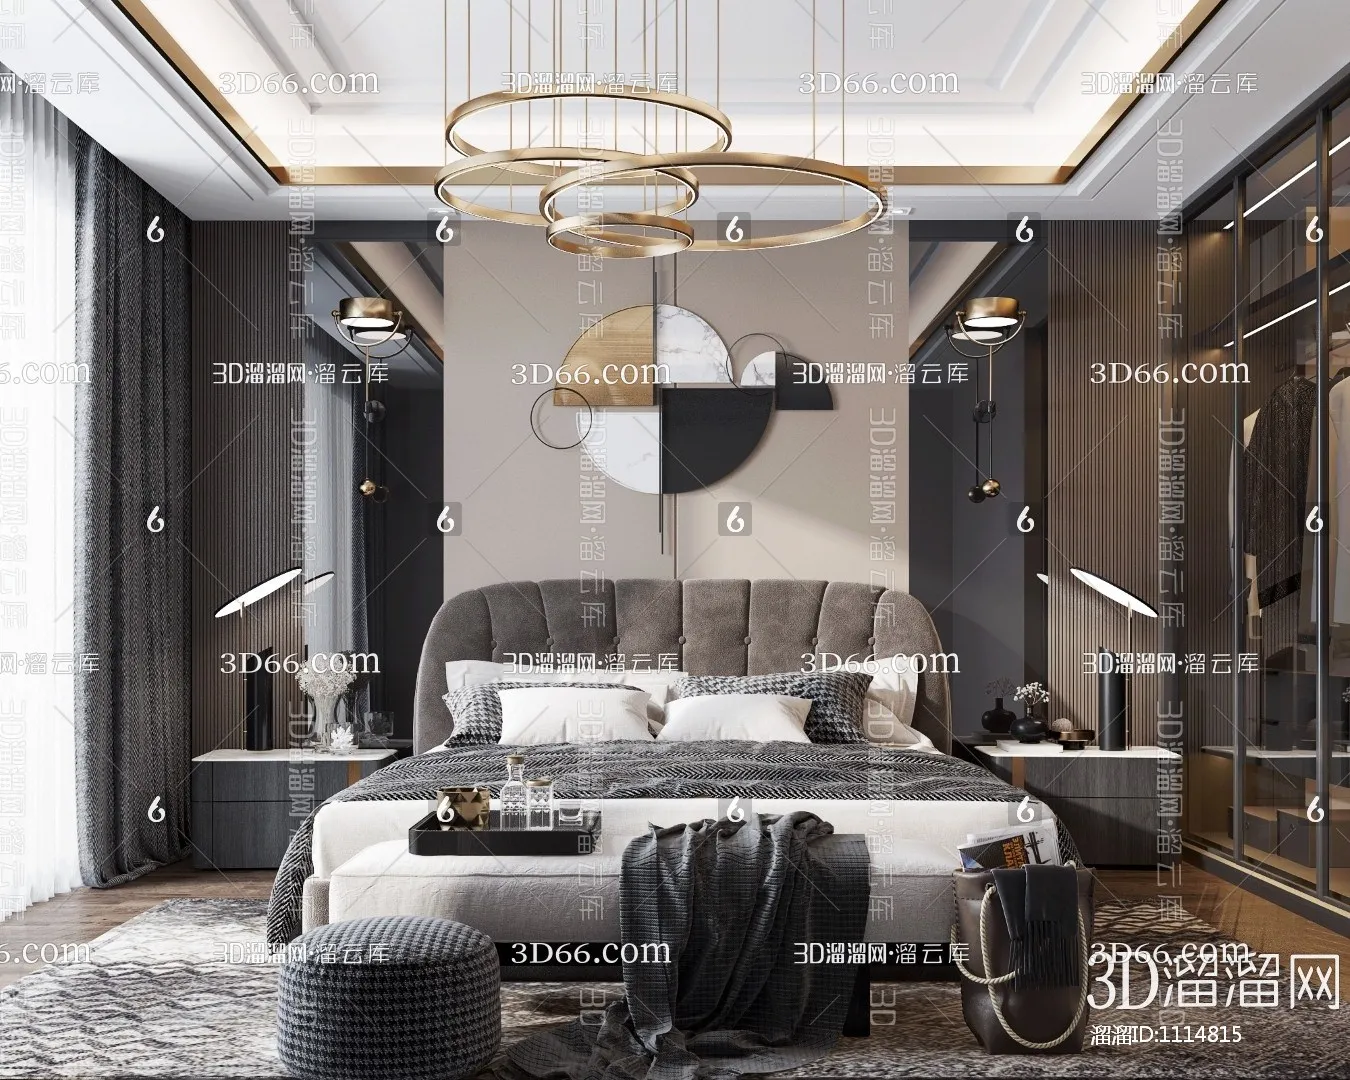 Bedroom 3D Scenes – 0258